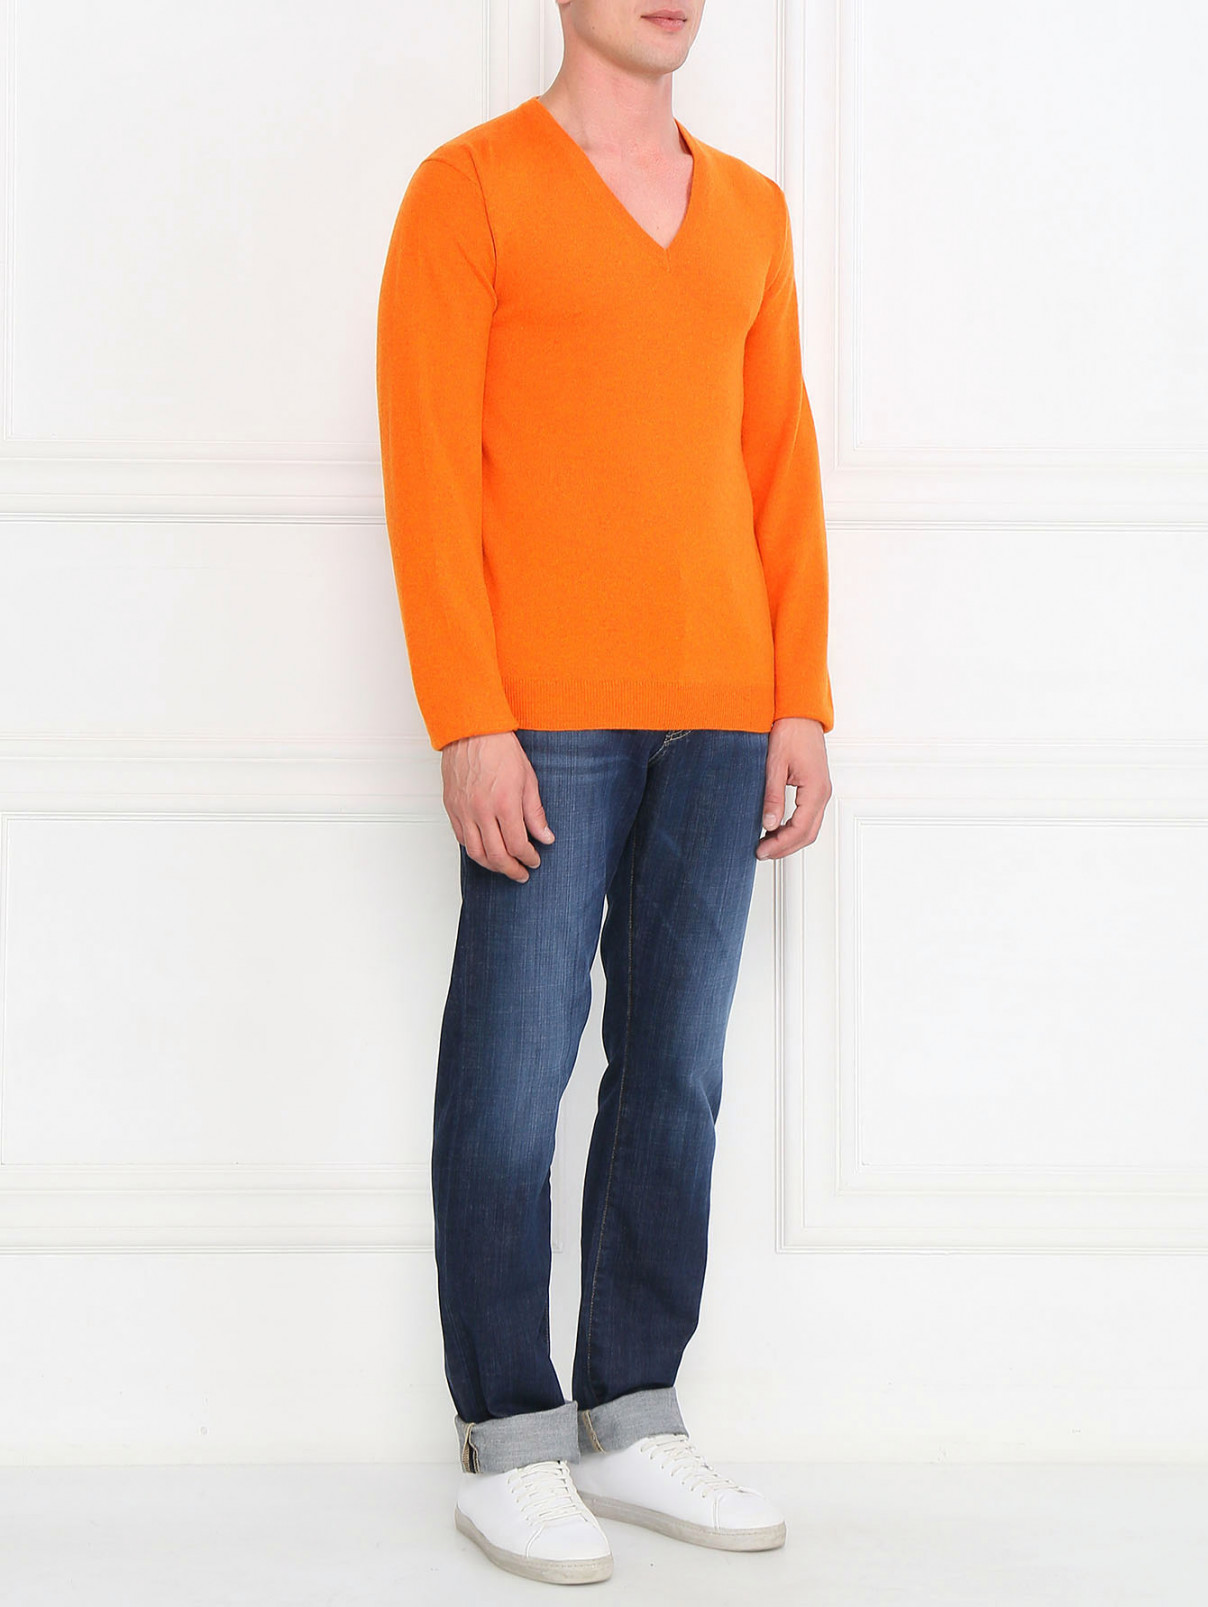 Пуловер из кашемира Ones  –  Модель Общий вид  – Цвет:  Оранжевый